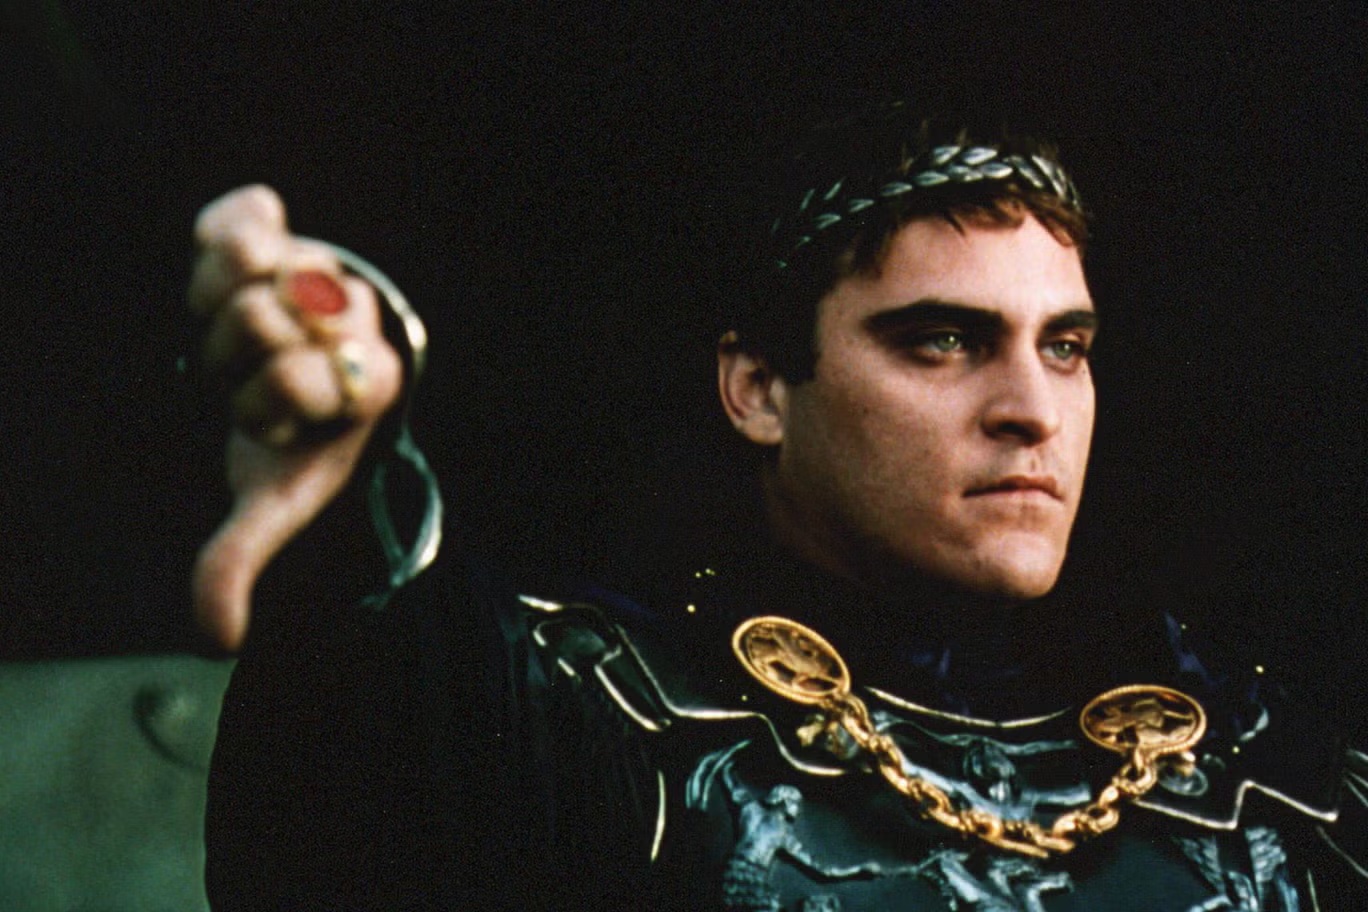 فينيكس في دور الإمبراطور المجنون كومودوس في فيلم "المصارع" الضخم لريدلي سكوت سنة 2000 (شترستوك)